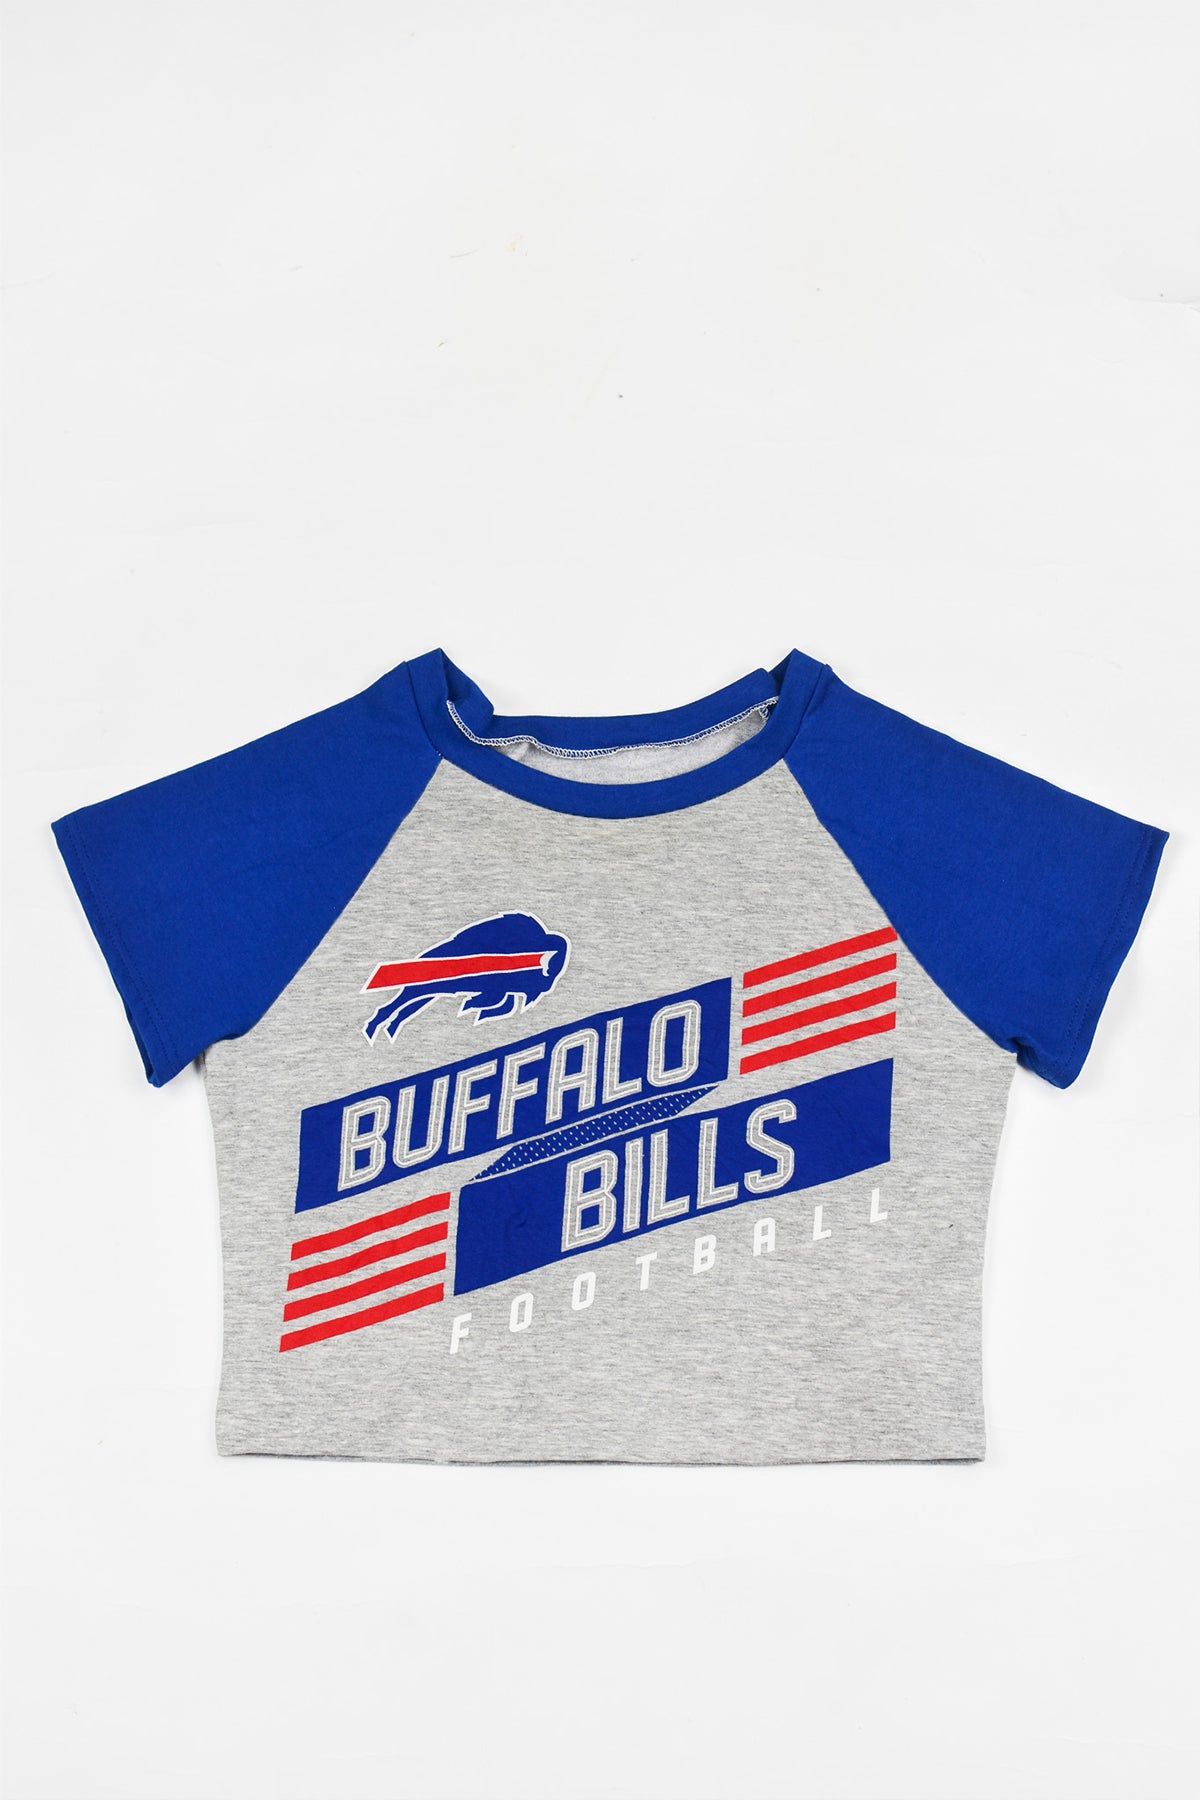 Wild Bill's Sports Apparel :: Orioles Gear :: T-Shirts